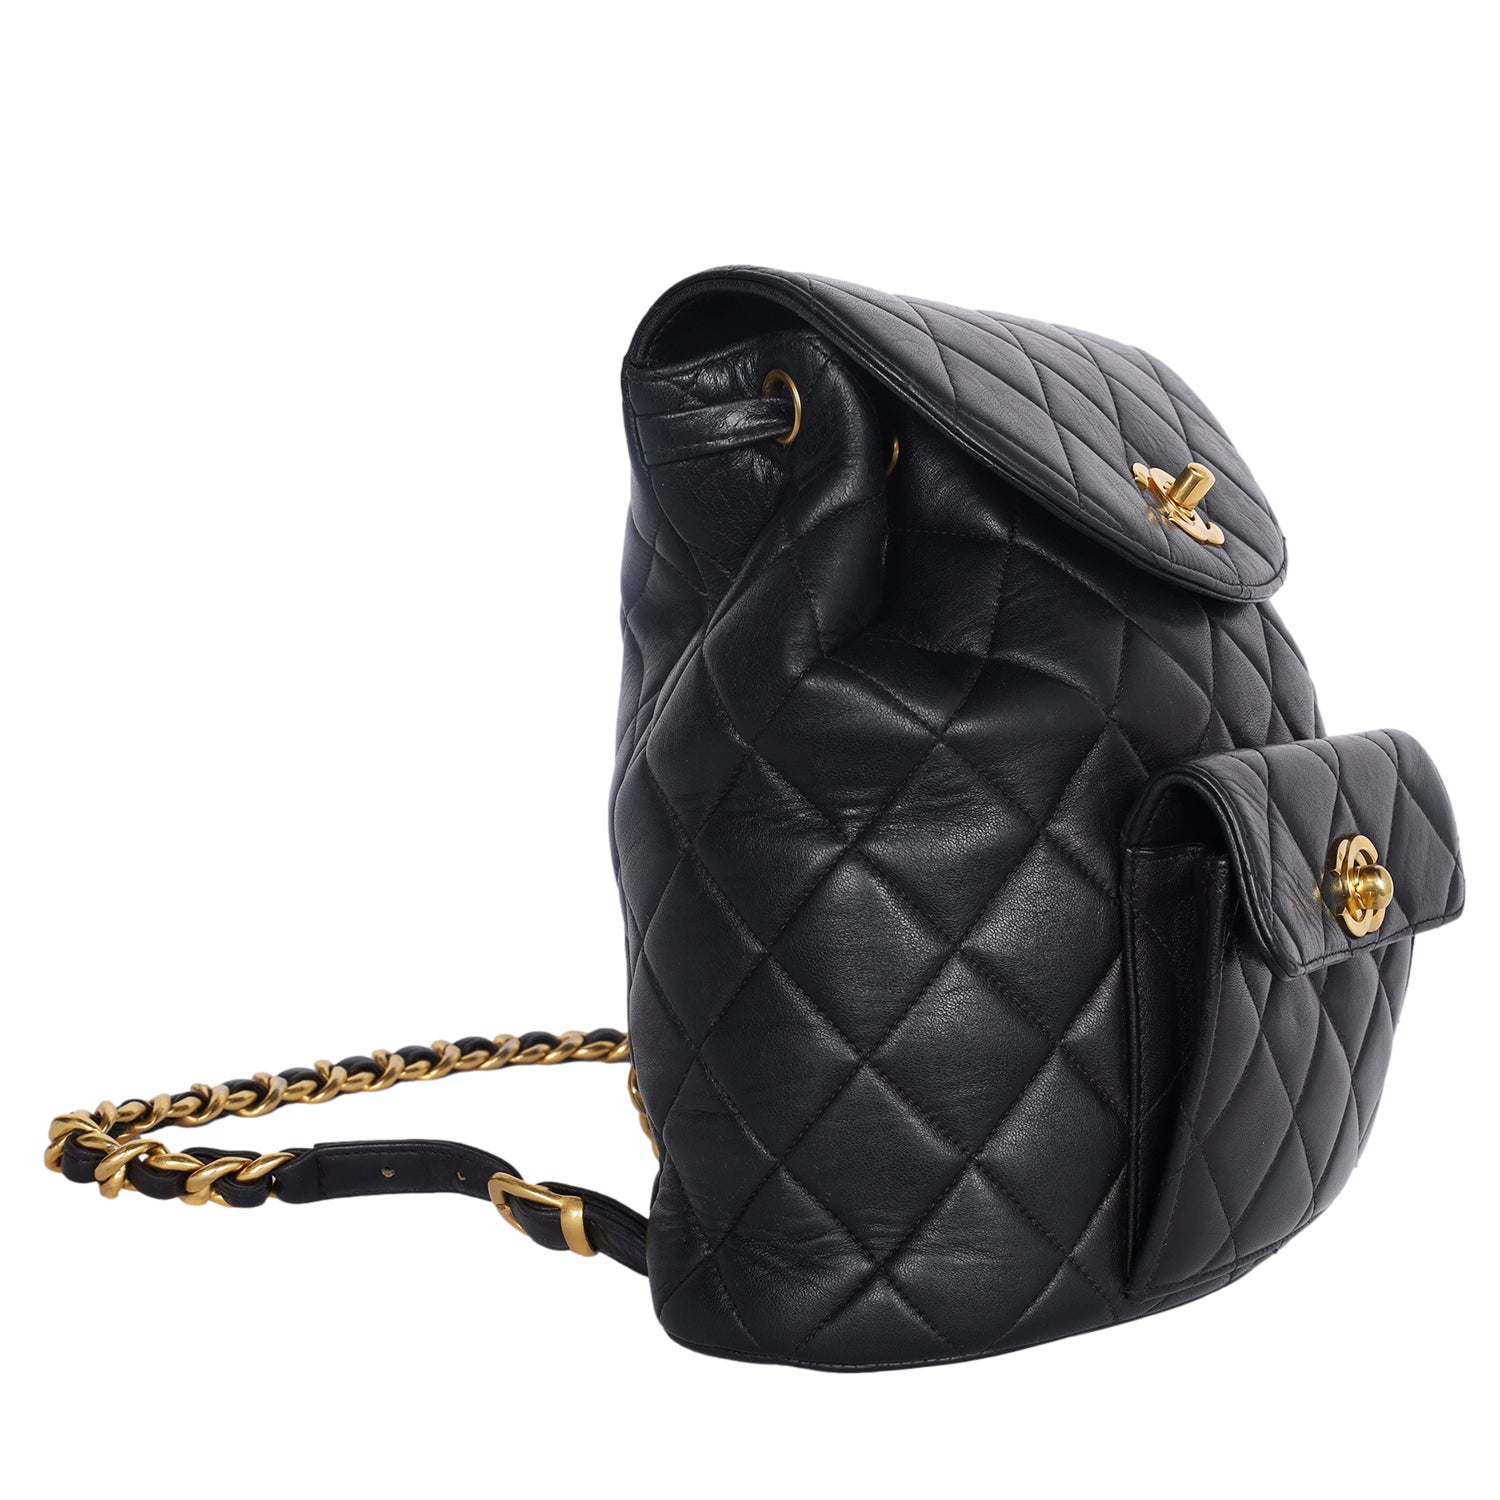 Duma leather backpack